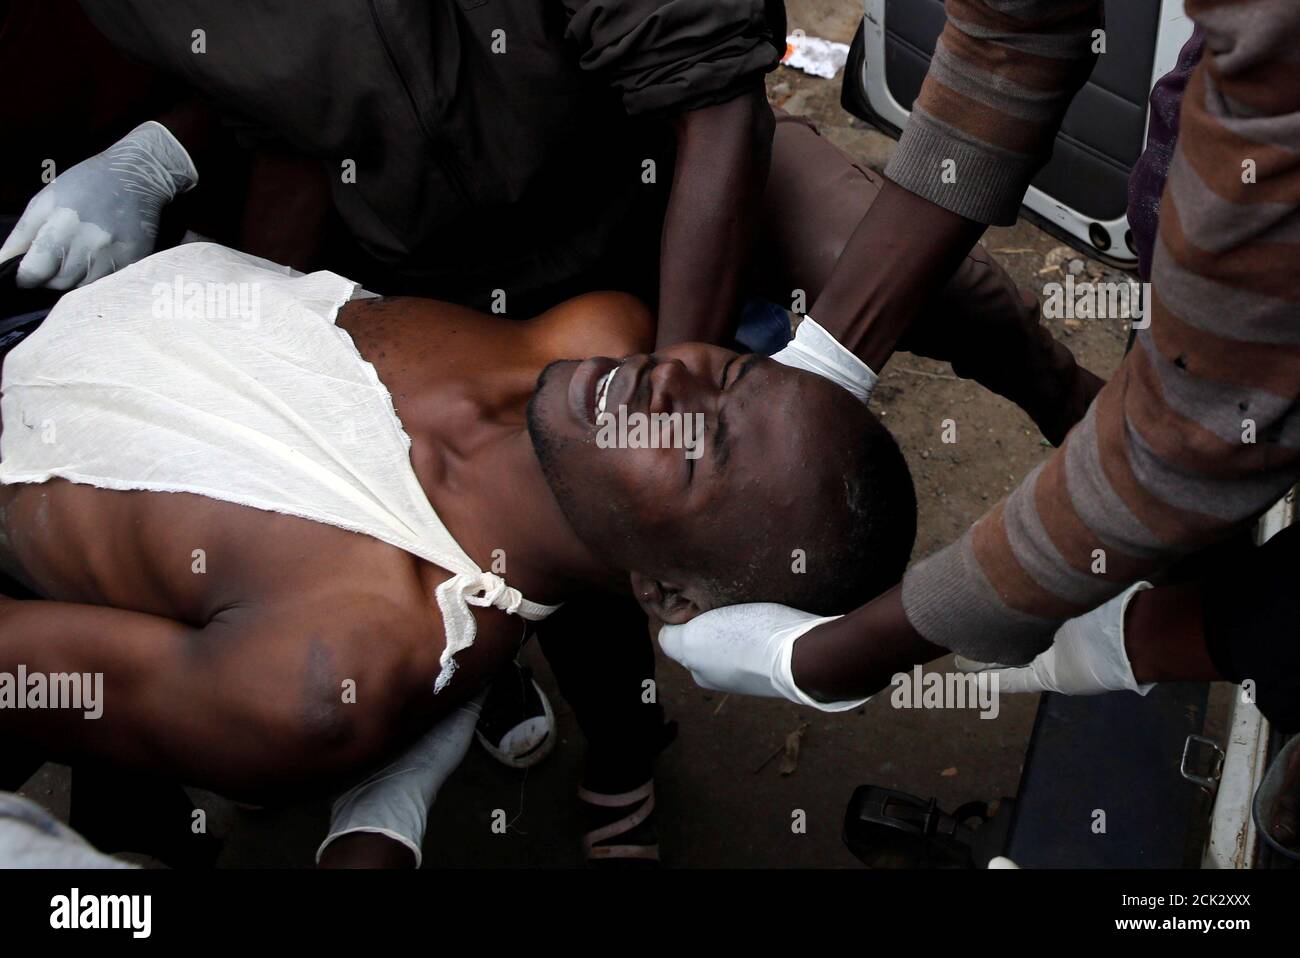 Los médicos evacuan a un manifestante herido durante enfrentamientos entre partidarios del líder de la oposición Raila Odinga y policías antidisturbios, en Mathare, Nairobi, Kenya, 12 de agosto de 2017. REUTERS/Thomas Mukoya Foto de stock